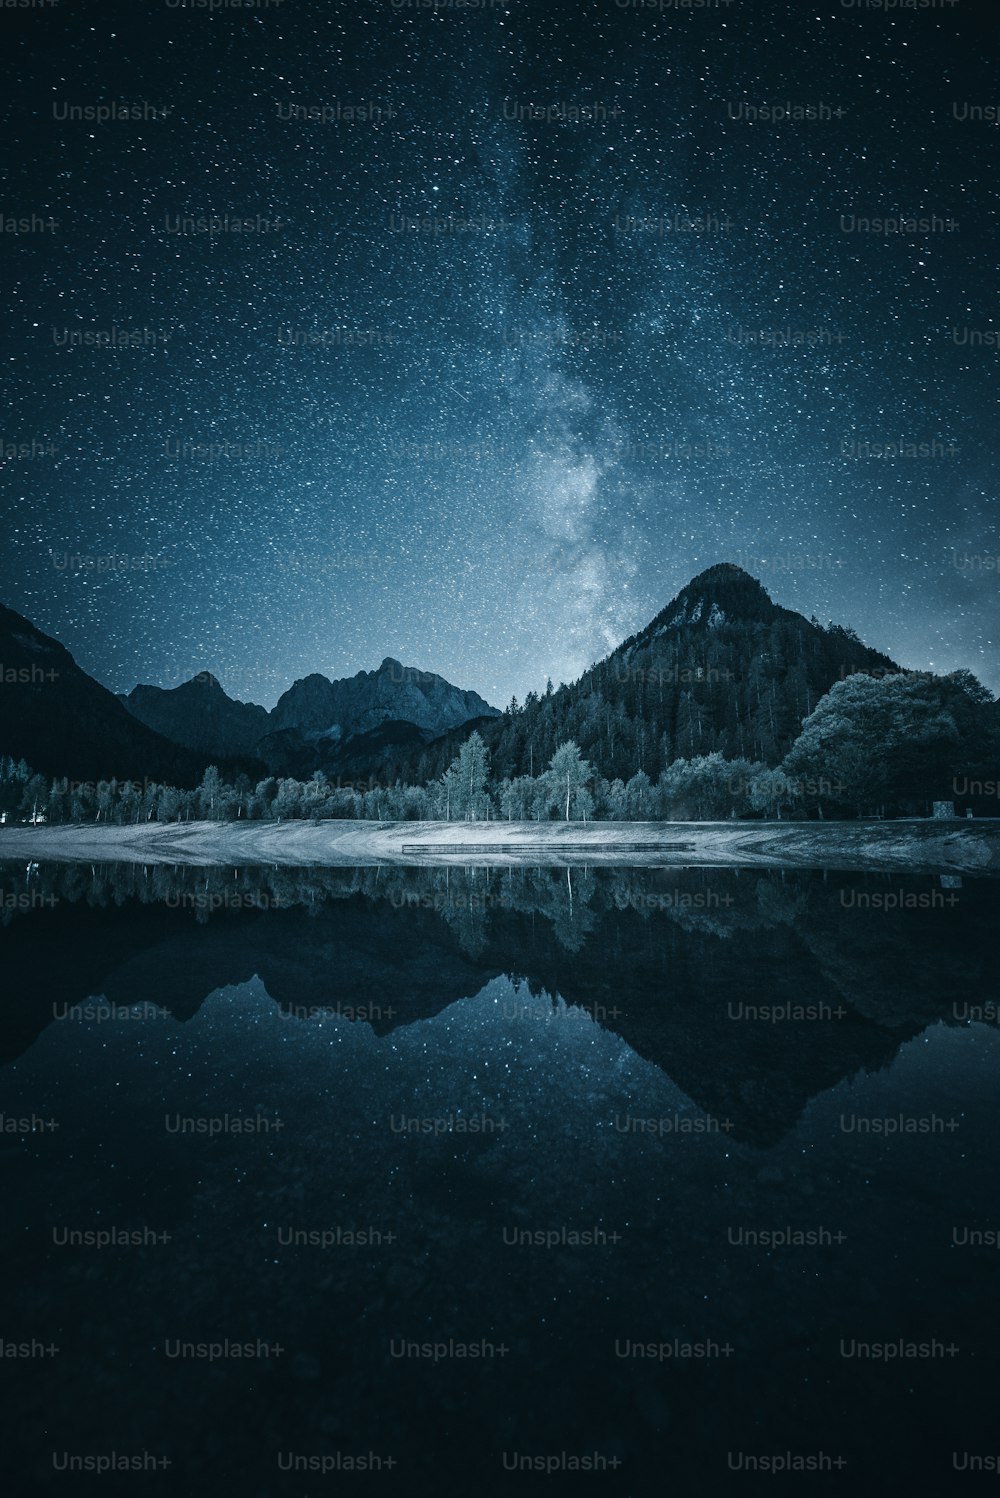 Le ciel nocturne se reflète dans l’eau calme d’un lac